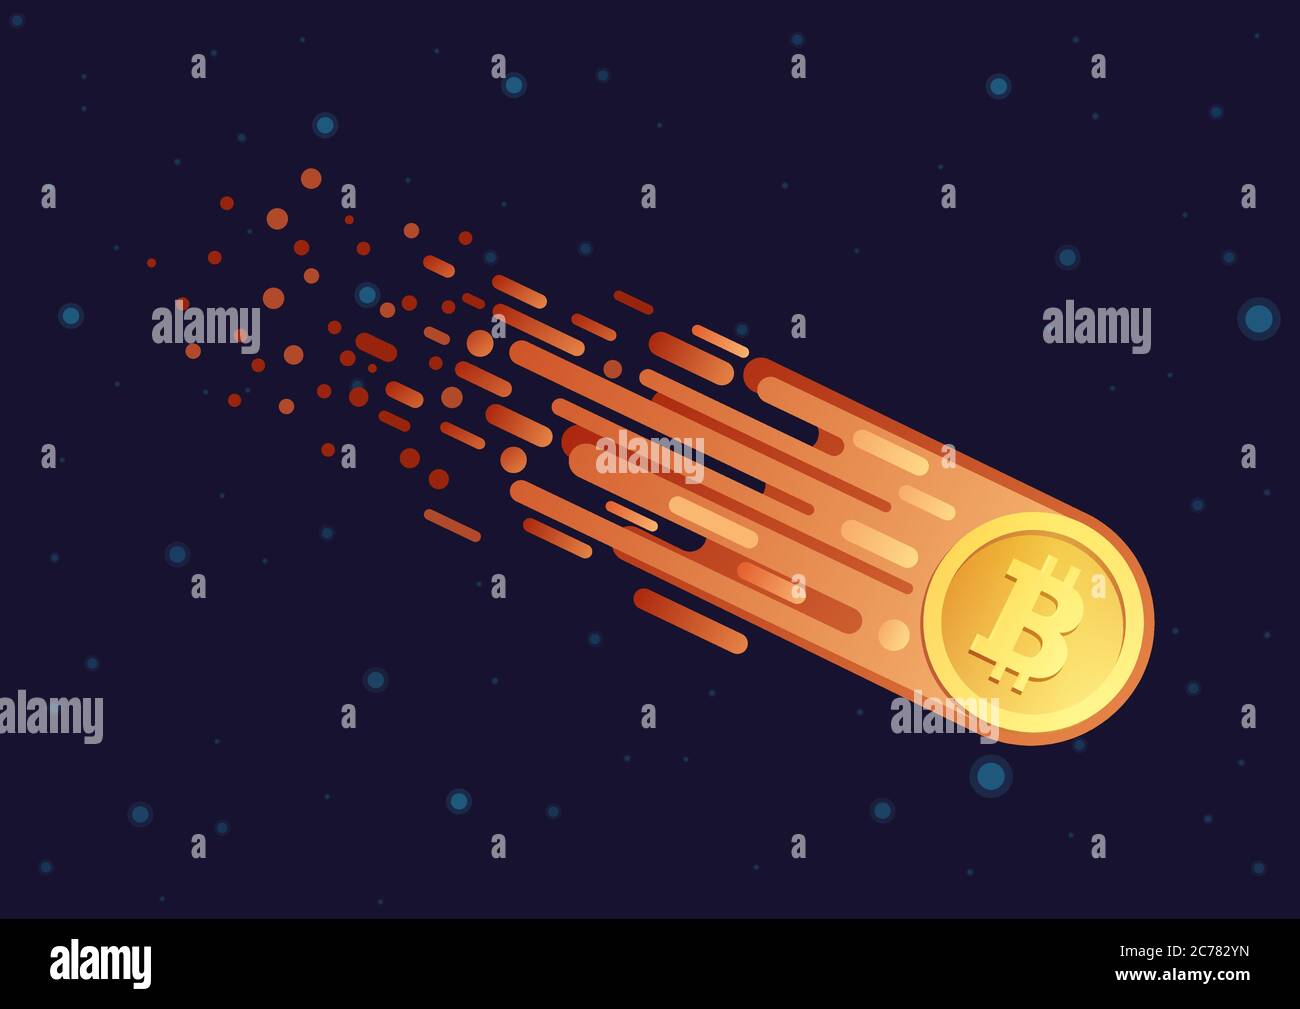 Dessin animé de dessin animé avec symbole de bitcoin doré volant dans un espace galaxie ouvert. Le Bitcoin tombe en panne Illustration de Vecteur